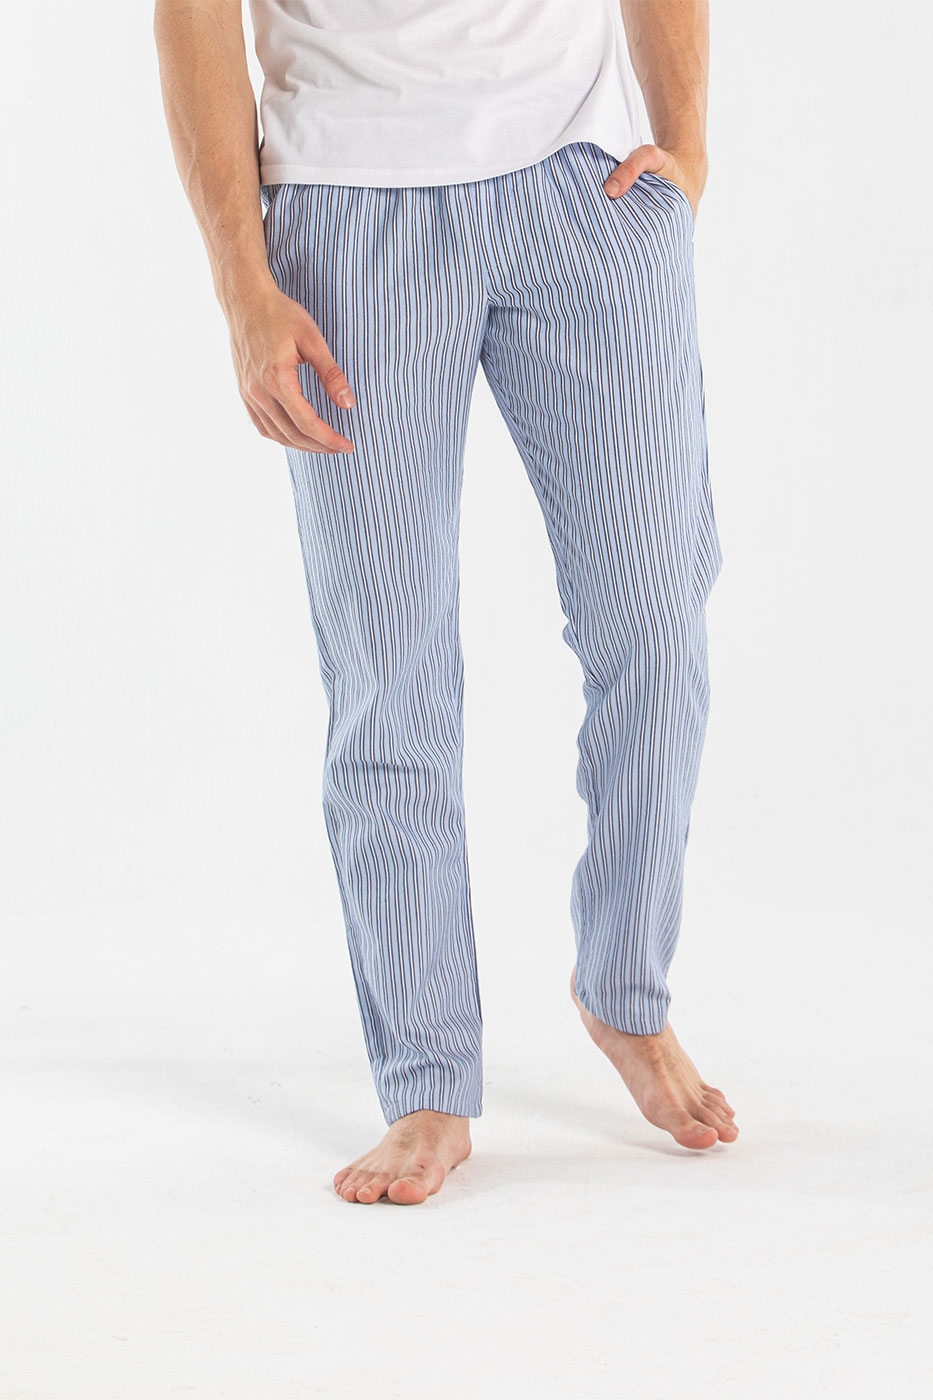 Blue Pants - Shop Men's Wear Online From Dresscode in Egypt